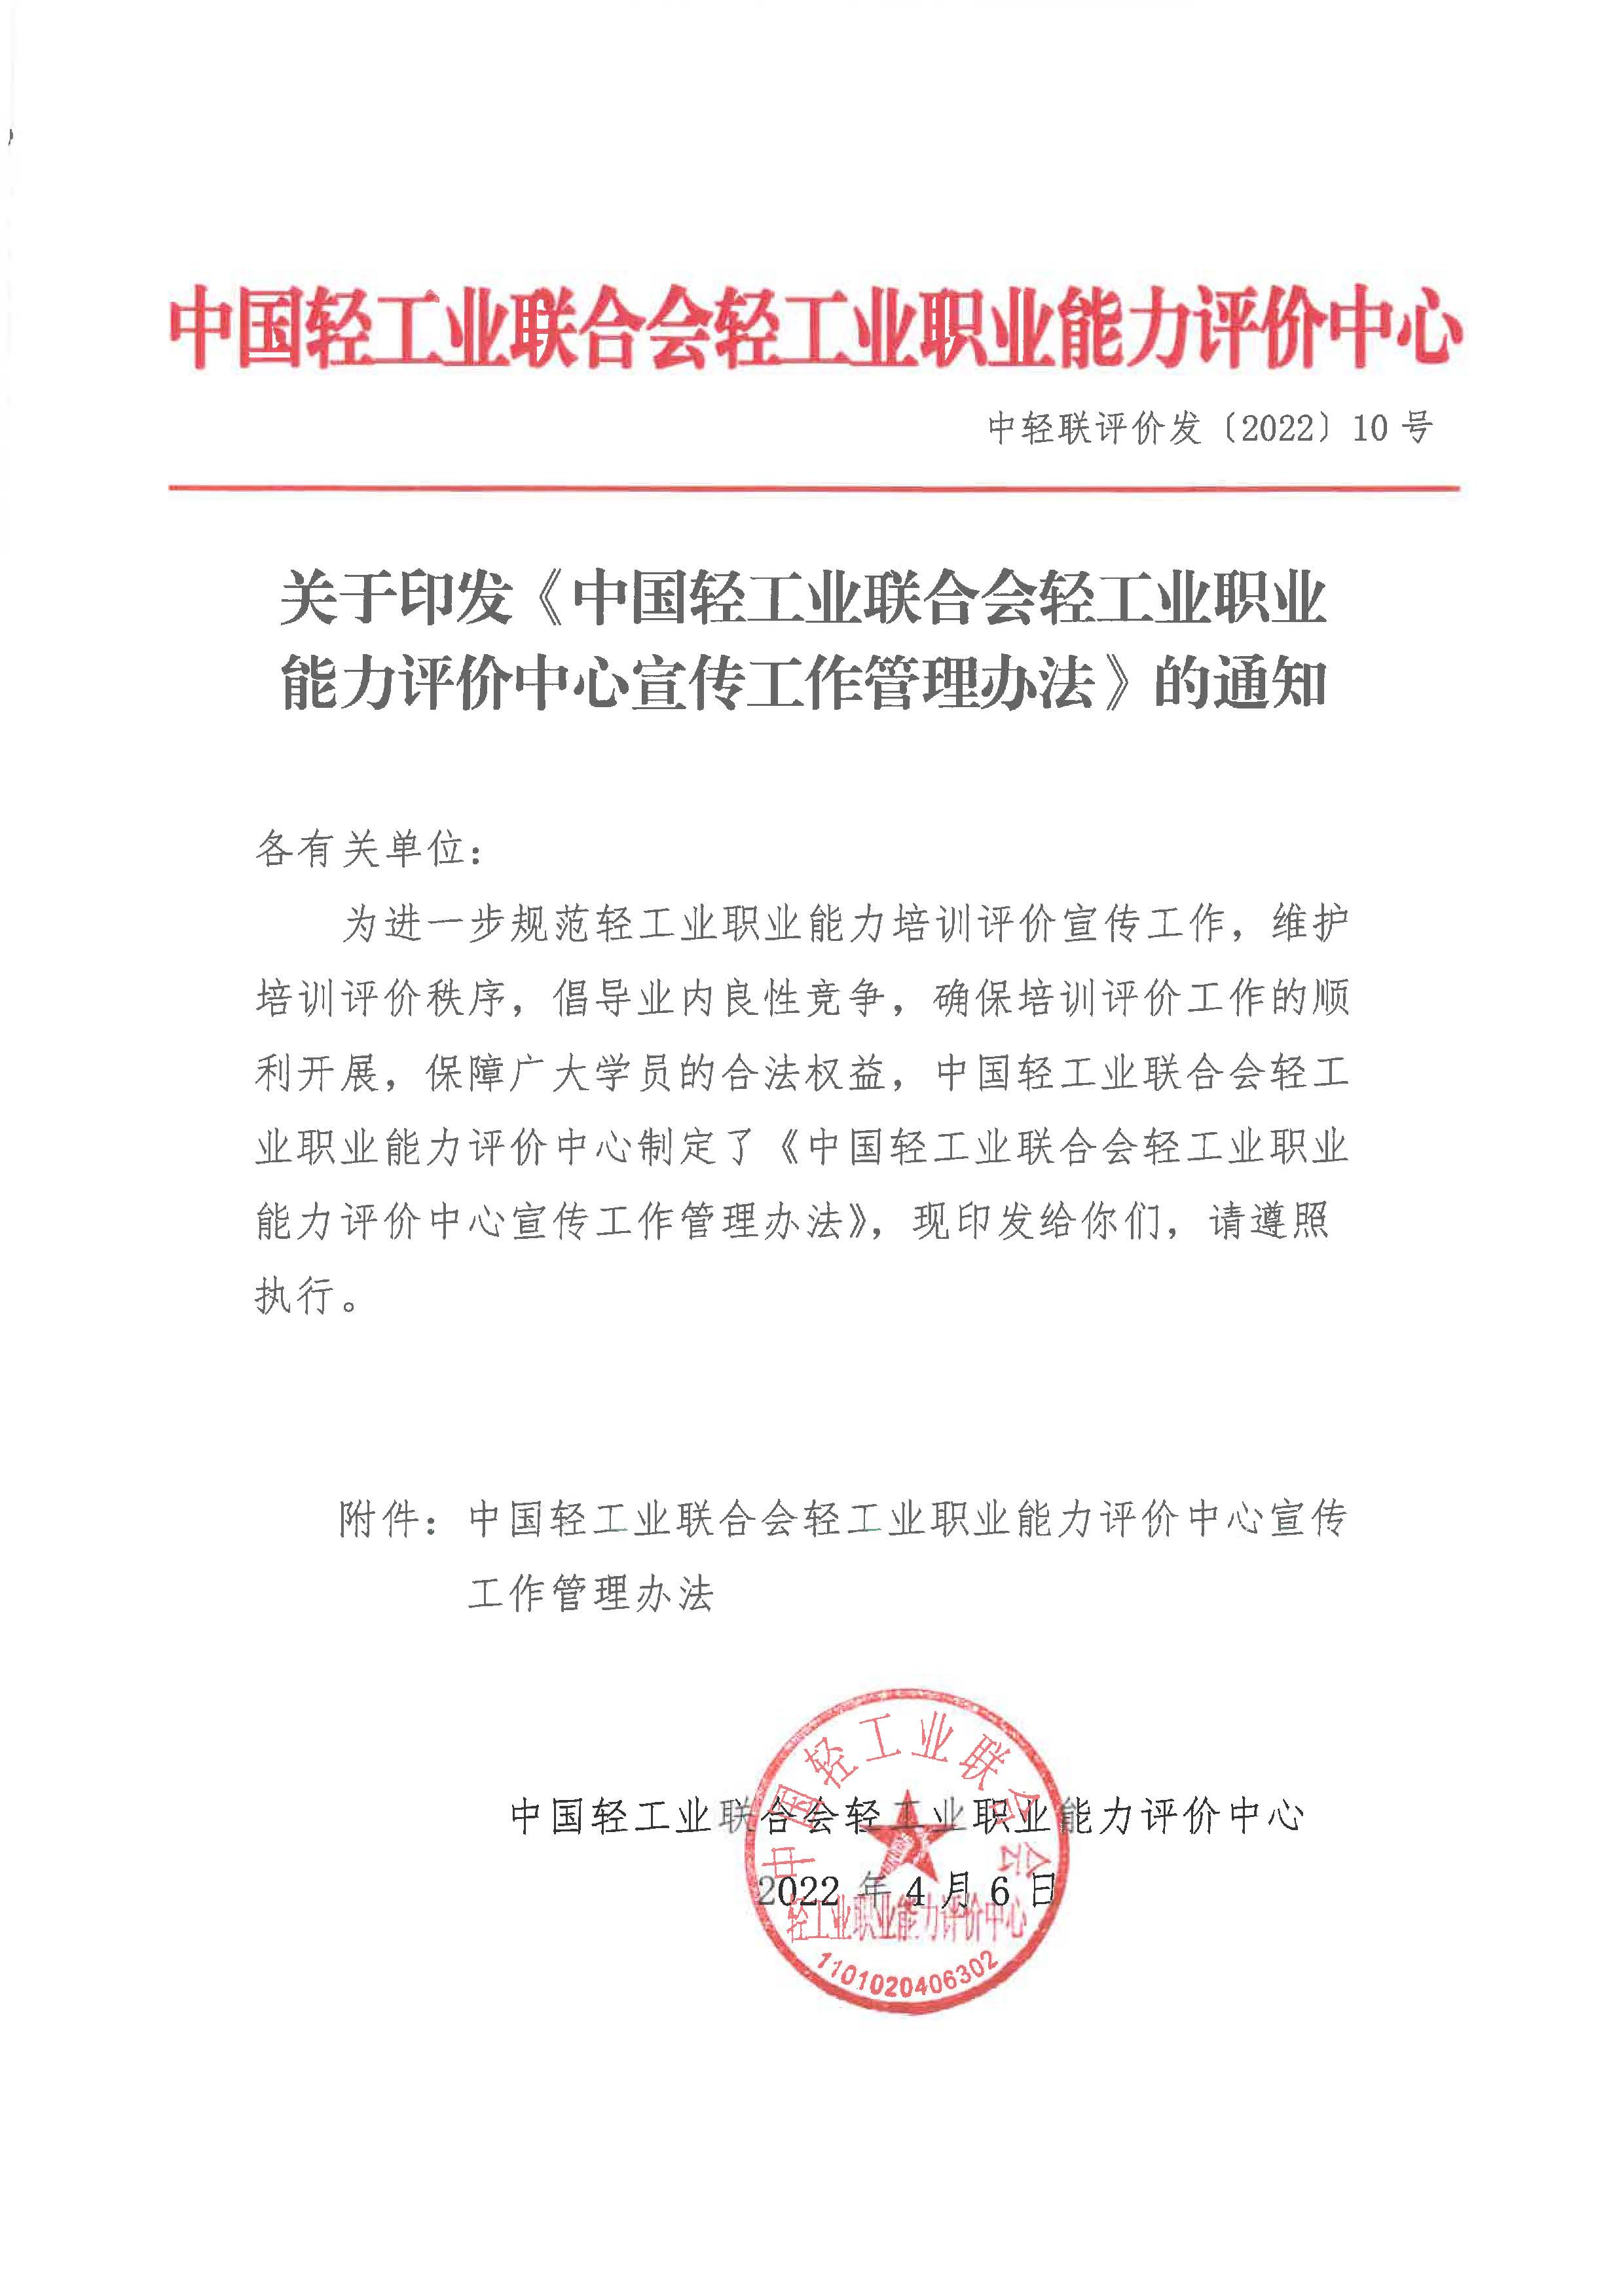 关于印发《中国轻工业联合会轻工业职业能力评价中心宣传工作管理办法》的通知(1)_页面_1.jpg